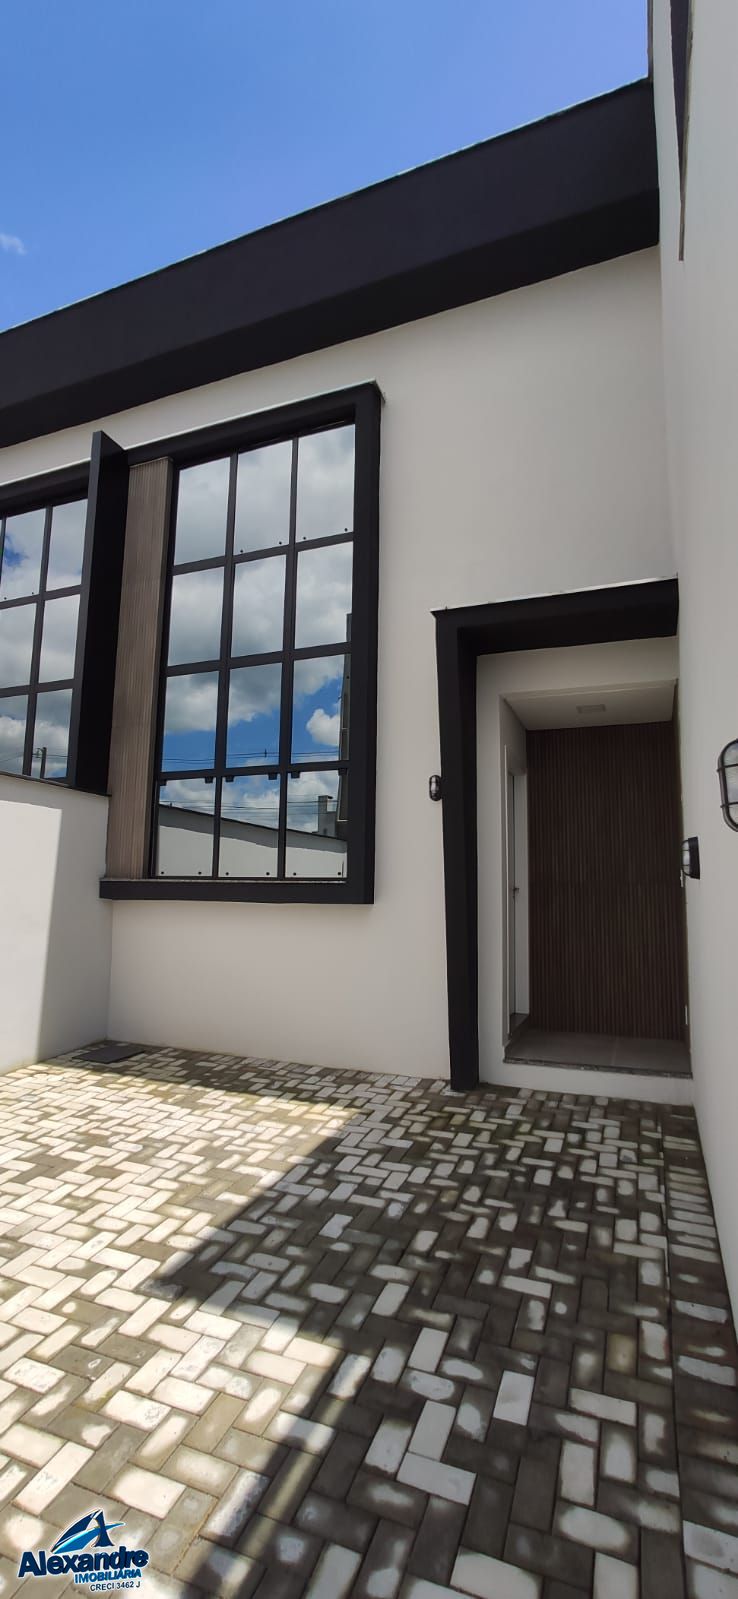 Casa  venda  no Trs Rios do Norte - Jaragu do Sul, SC. Imveis